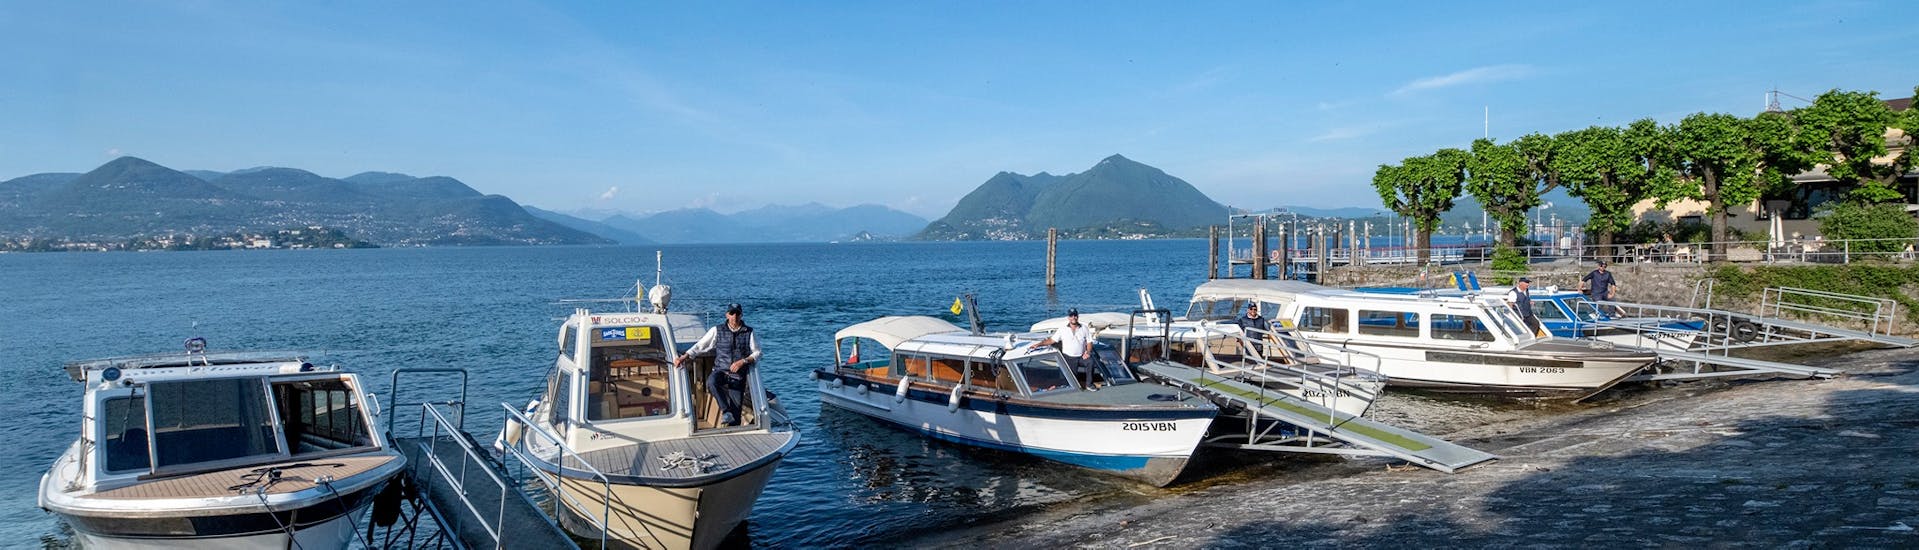 Blick auf die Boote, die für den Bootstransfer von Stresa nach Isola Pescatori mit Lake Tours Stresa verwendet werden.